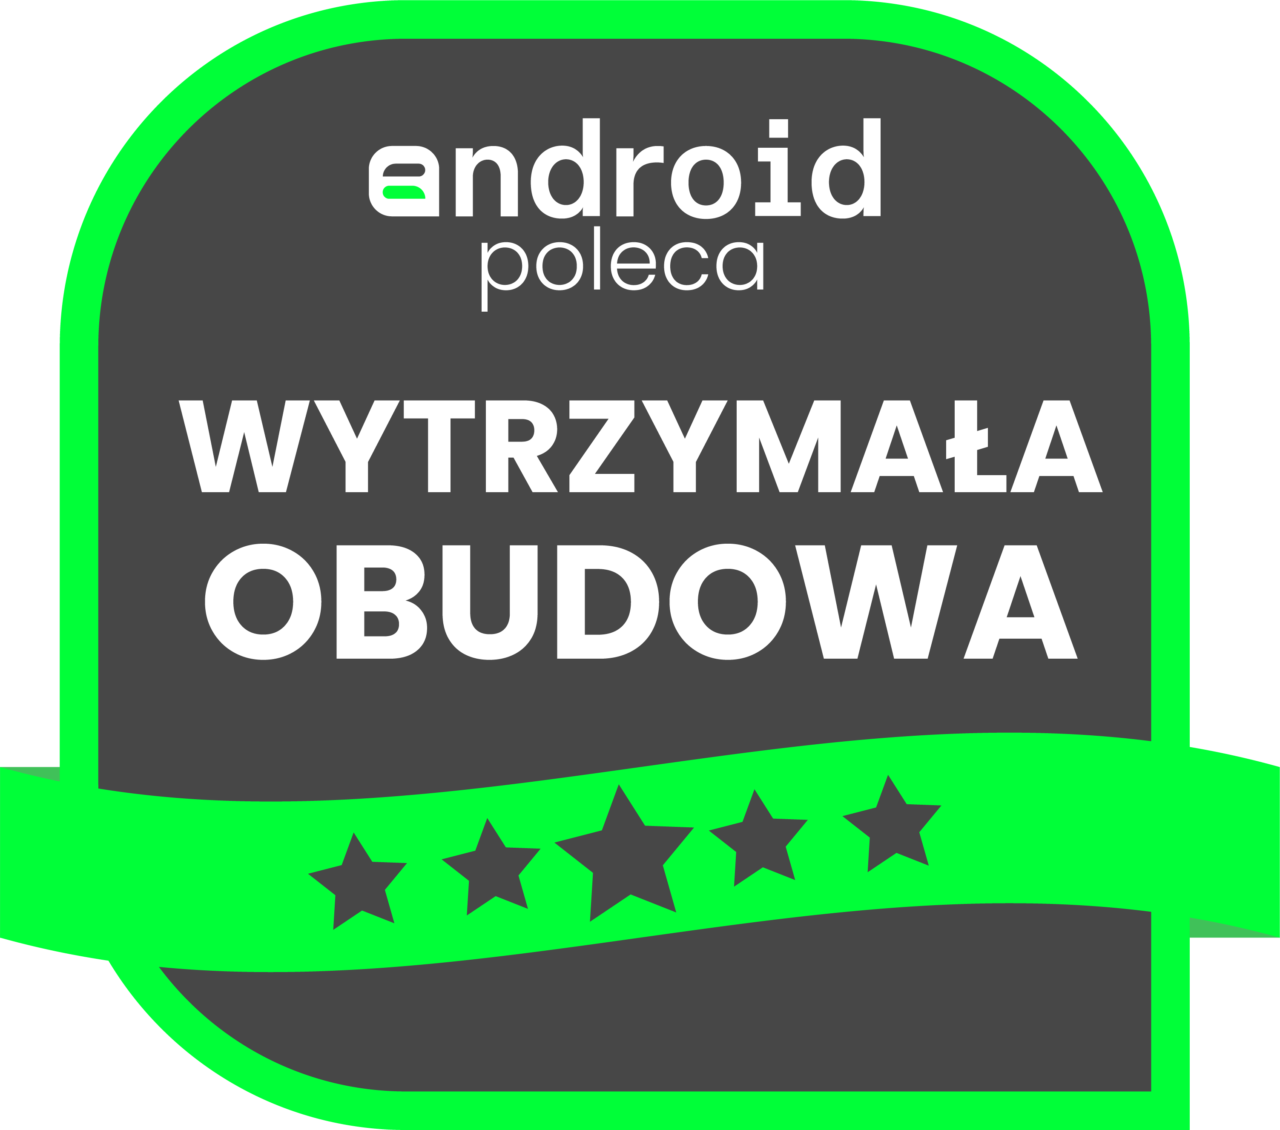 "android poleca WYTRZYMAŁA OBUDOWA" z pięcioma gwiazdkami